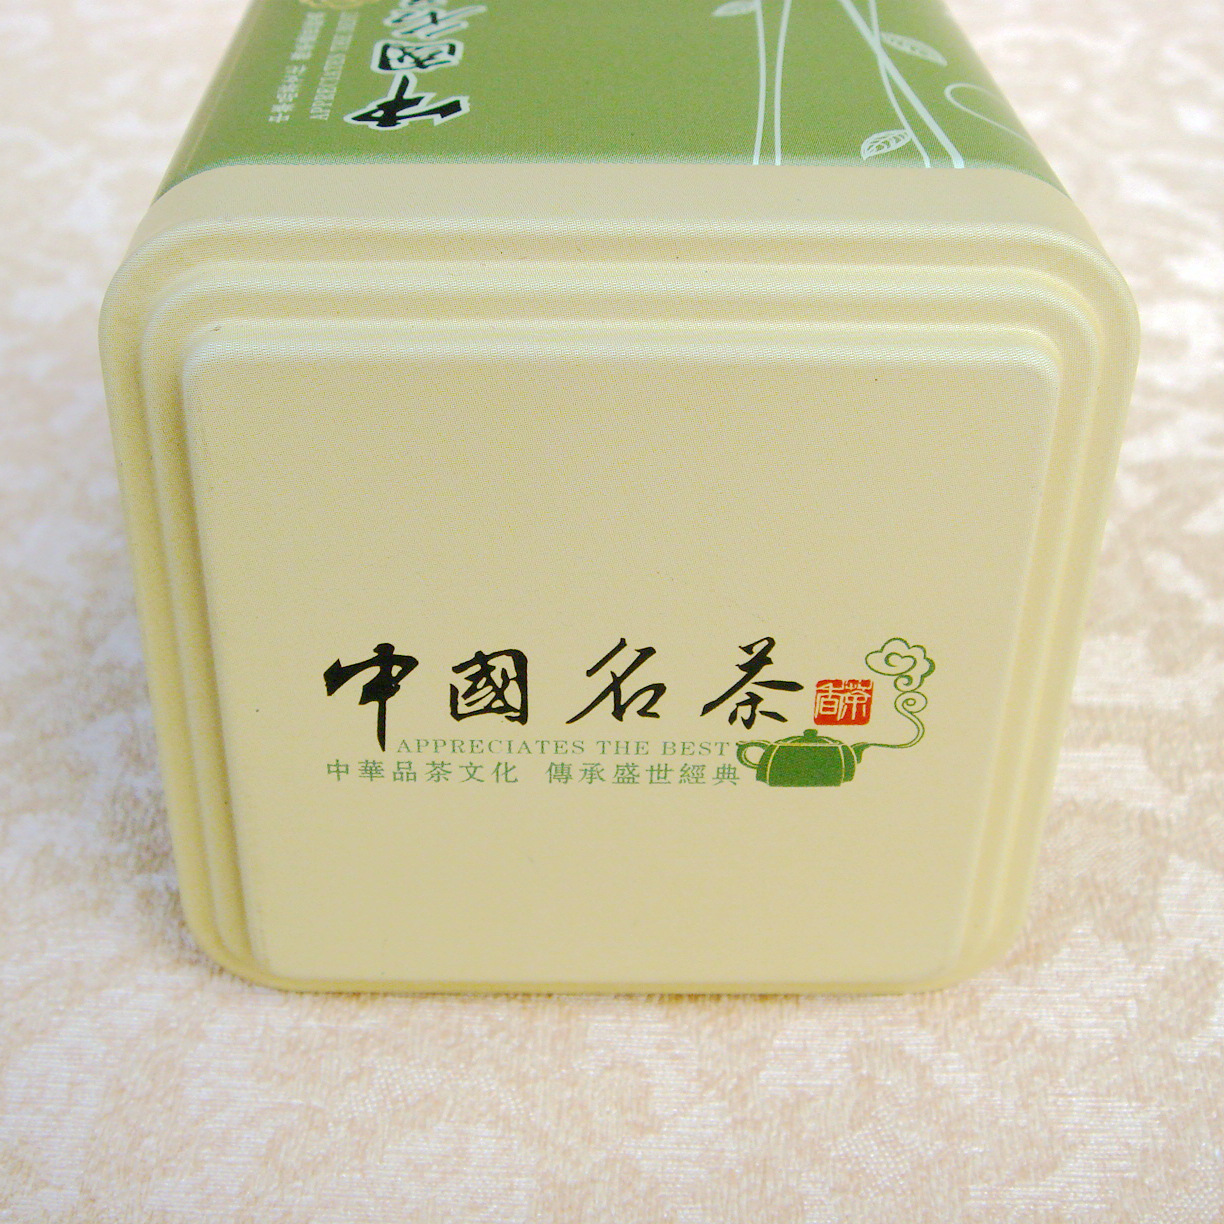 福建特产 2017年新茶 铁盒装白芽奇兰茶叶 简精厂家人气乌龙茶 单盒邮费7元 两盒包邮